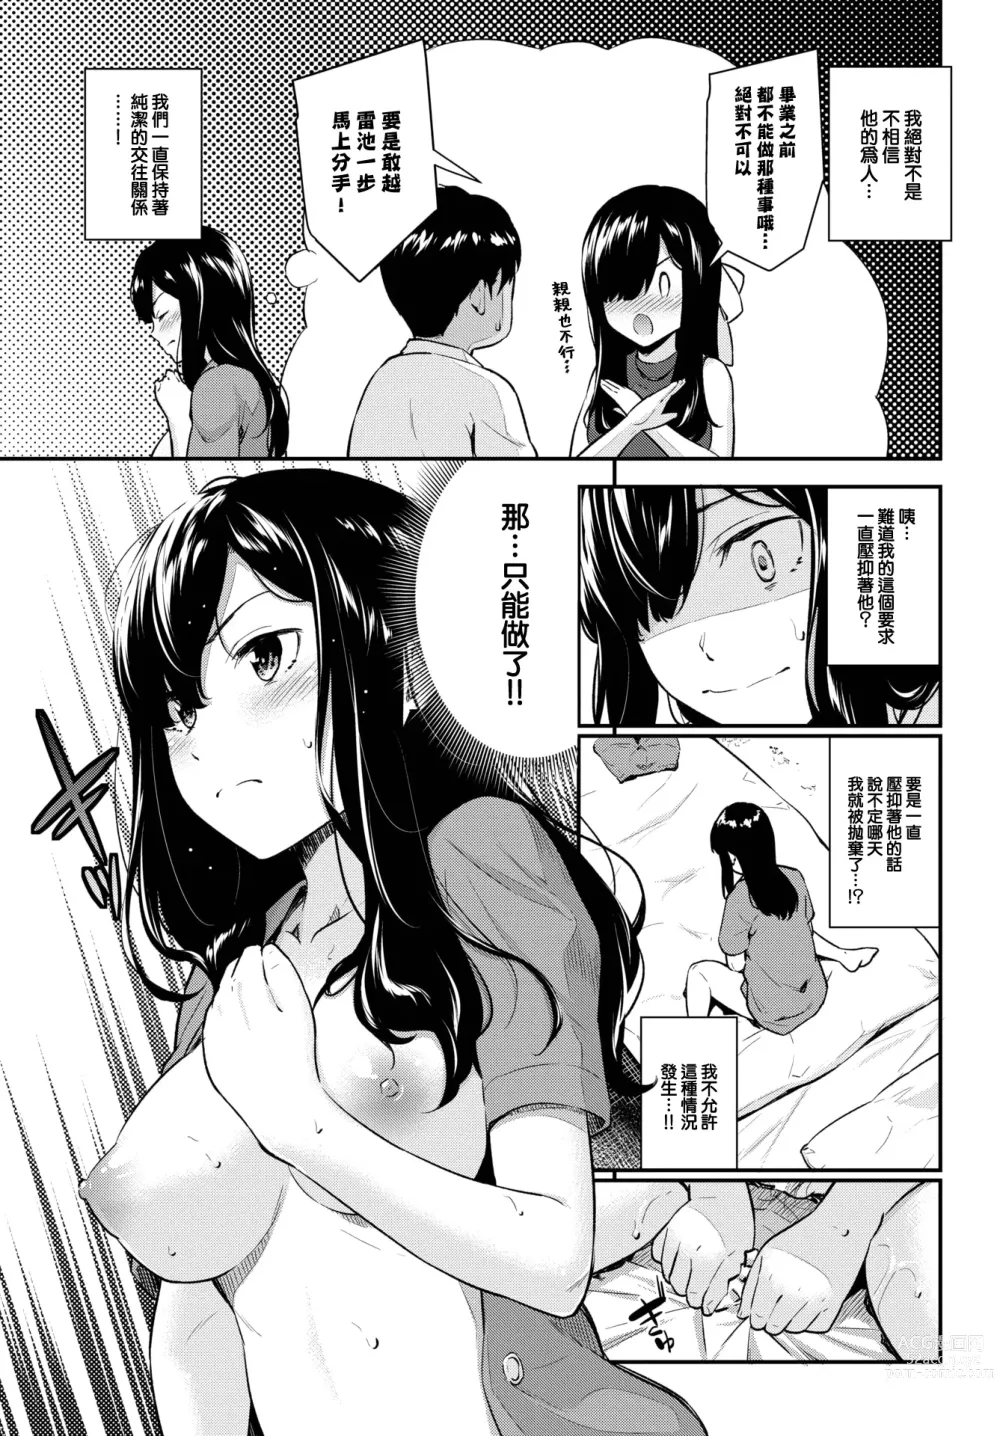 Page 4 of manga Yakimoki Teacher - Impatient teacher